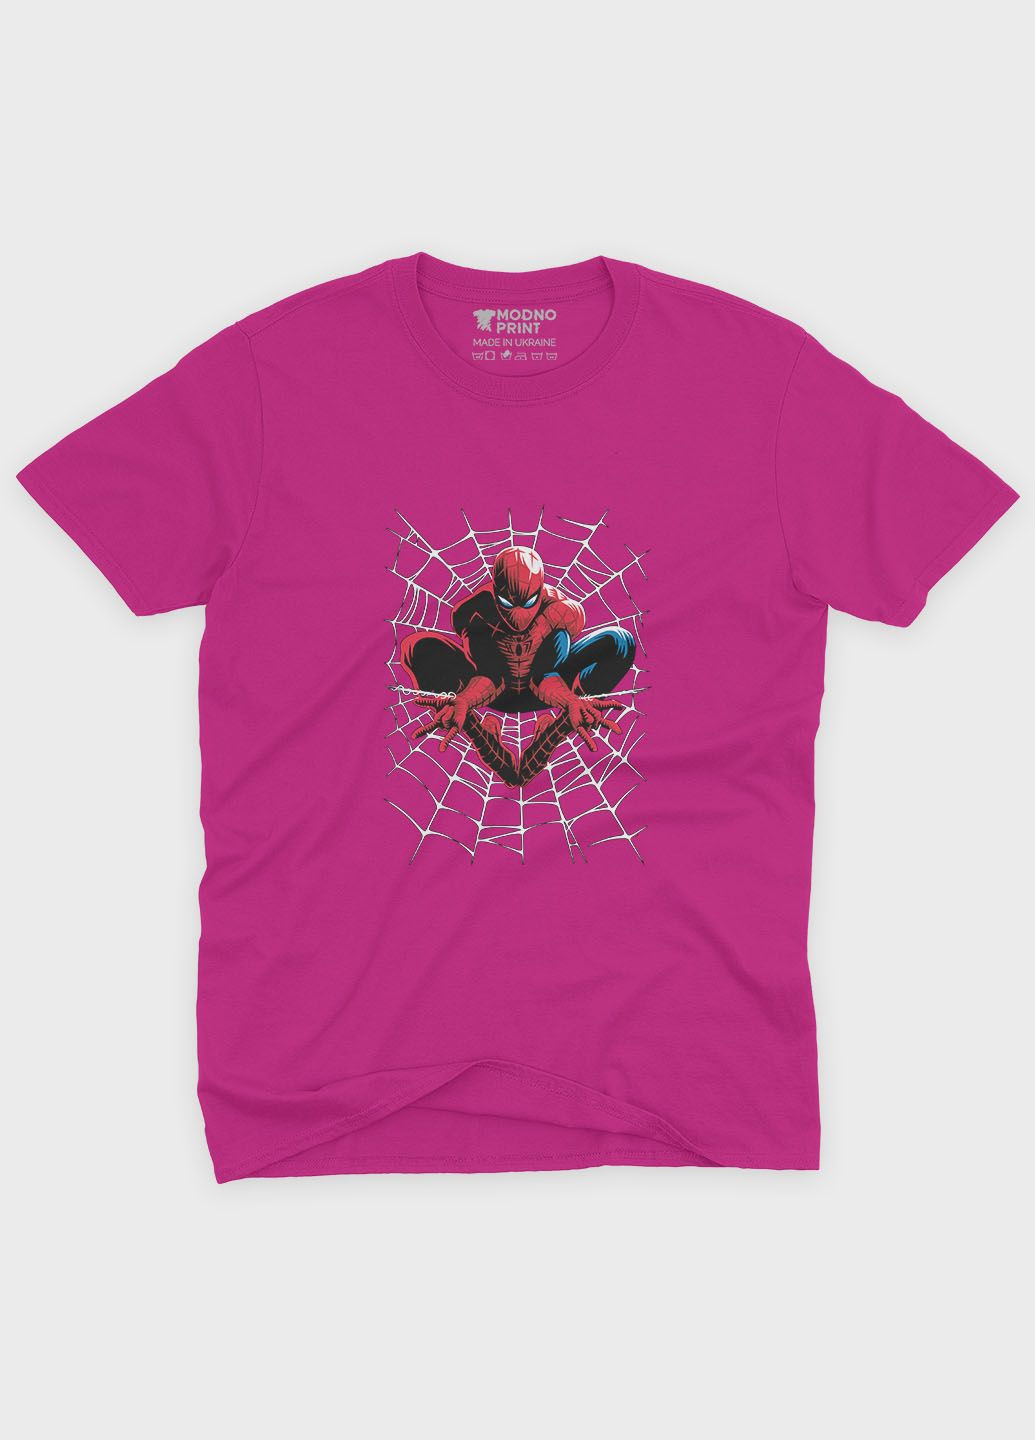 Рожева демісезонна футболка для дівчинки з принтом супергероя - людина-павук (ts001-1-fuxj-006-014-064-g) Modno